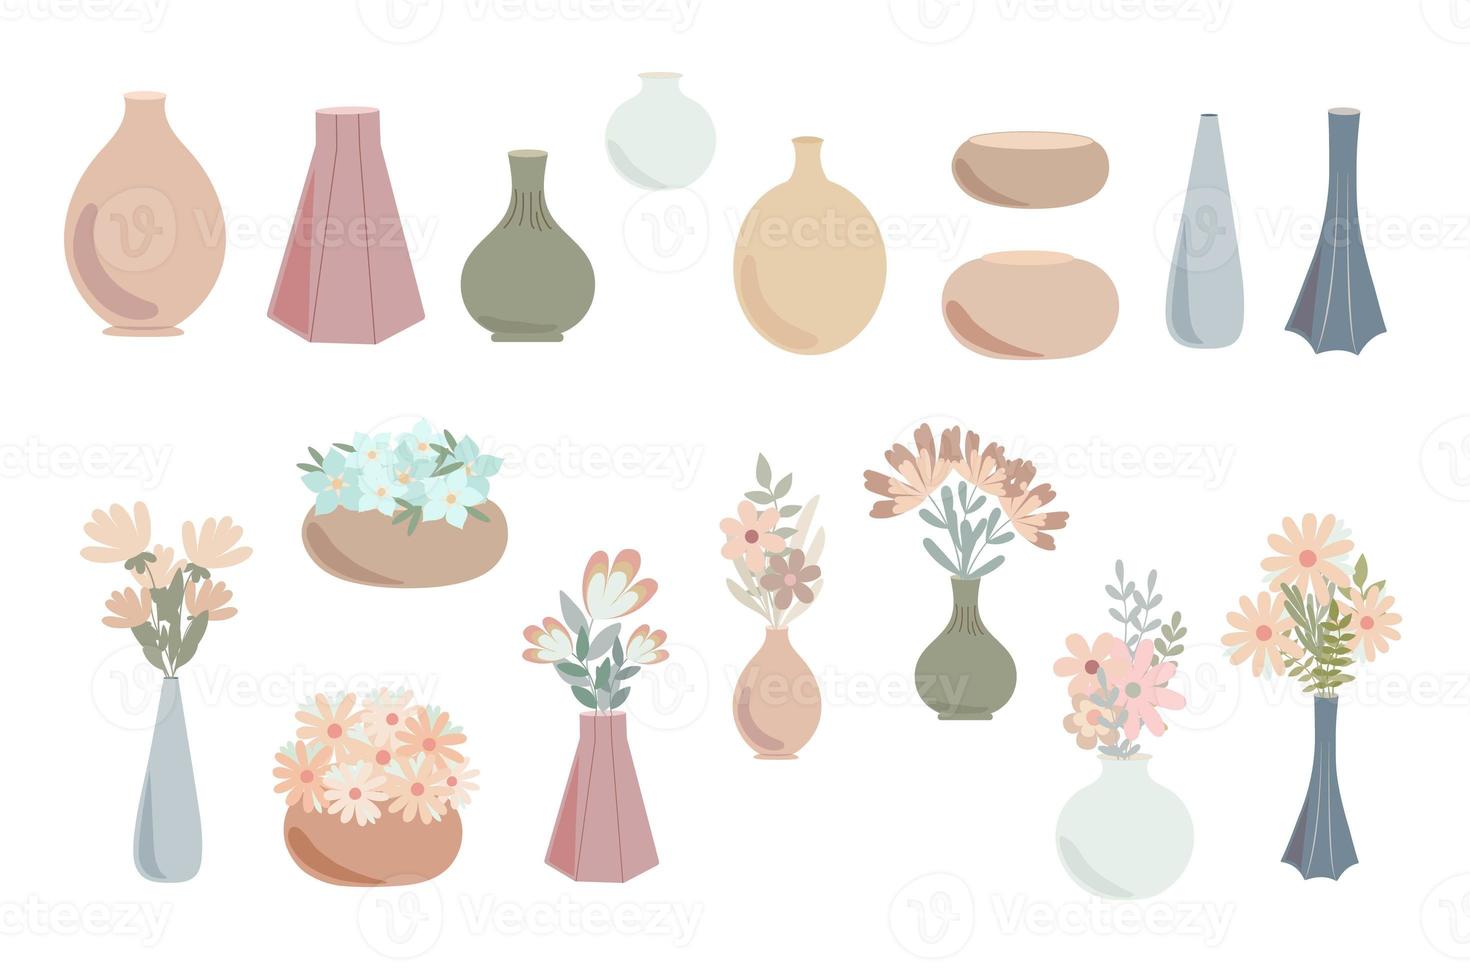 bohemiska vaser med snygga ljusorange blommor i enkel platt stil abstrakt vektor pastellfärgad illustration, trendigt minimalistiskt mysigt heminredningskoncept, romantiskt gratulationskort, inbjudan foto